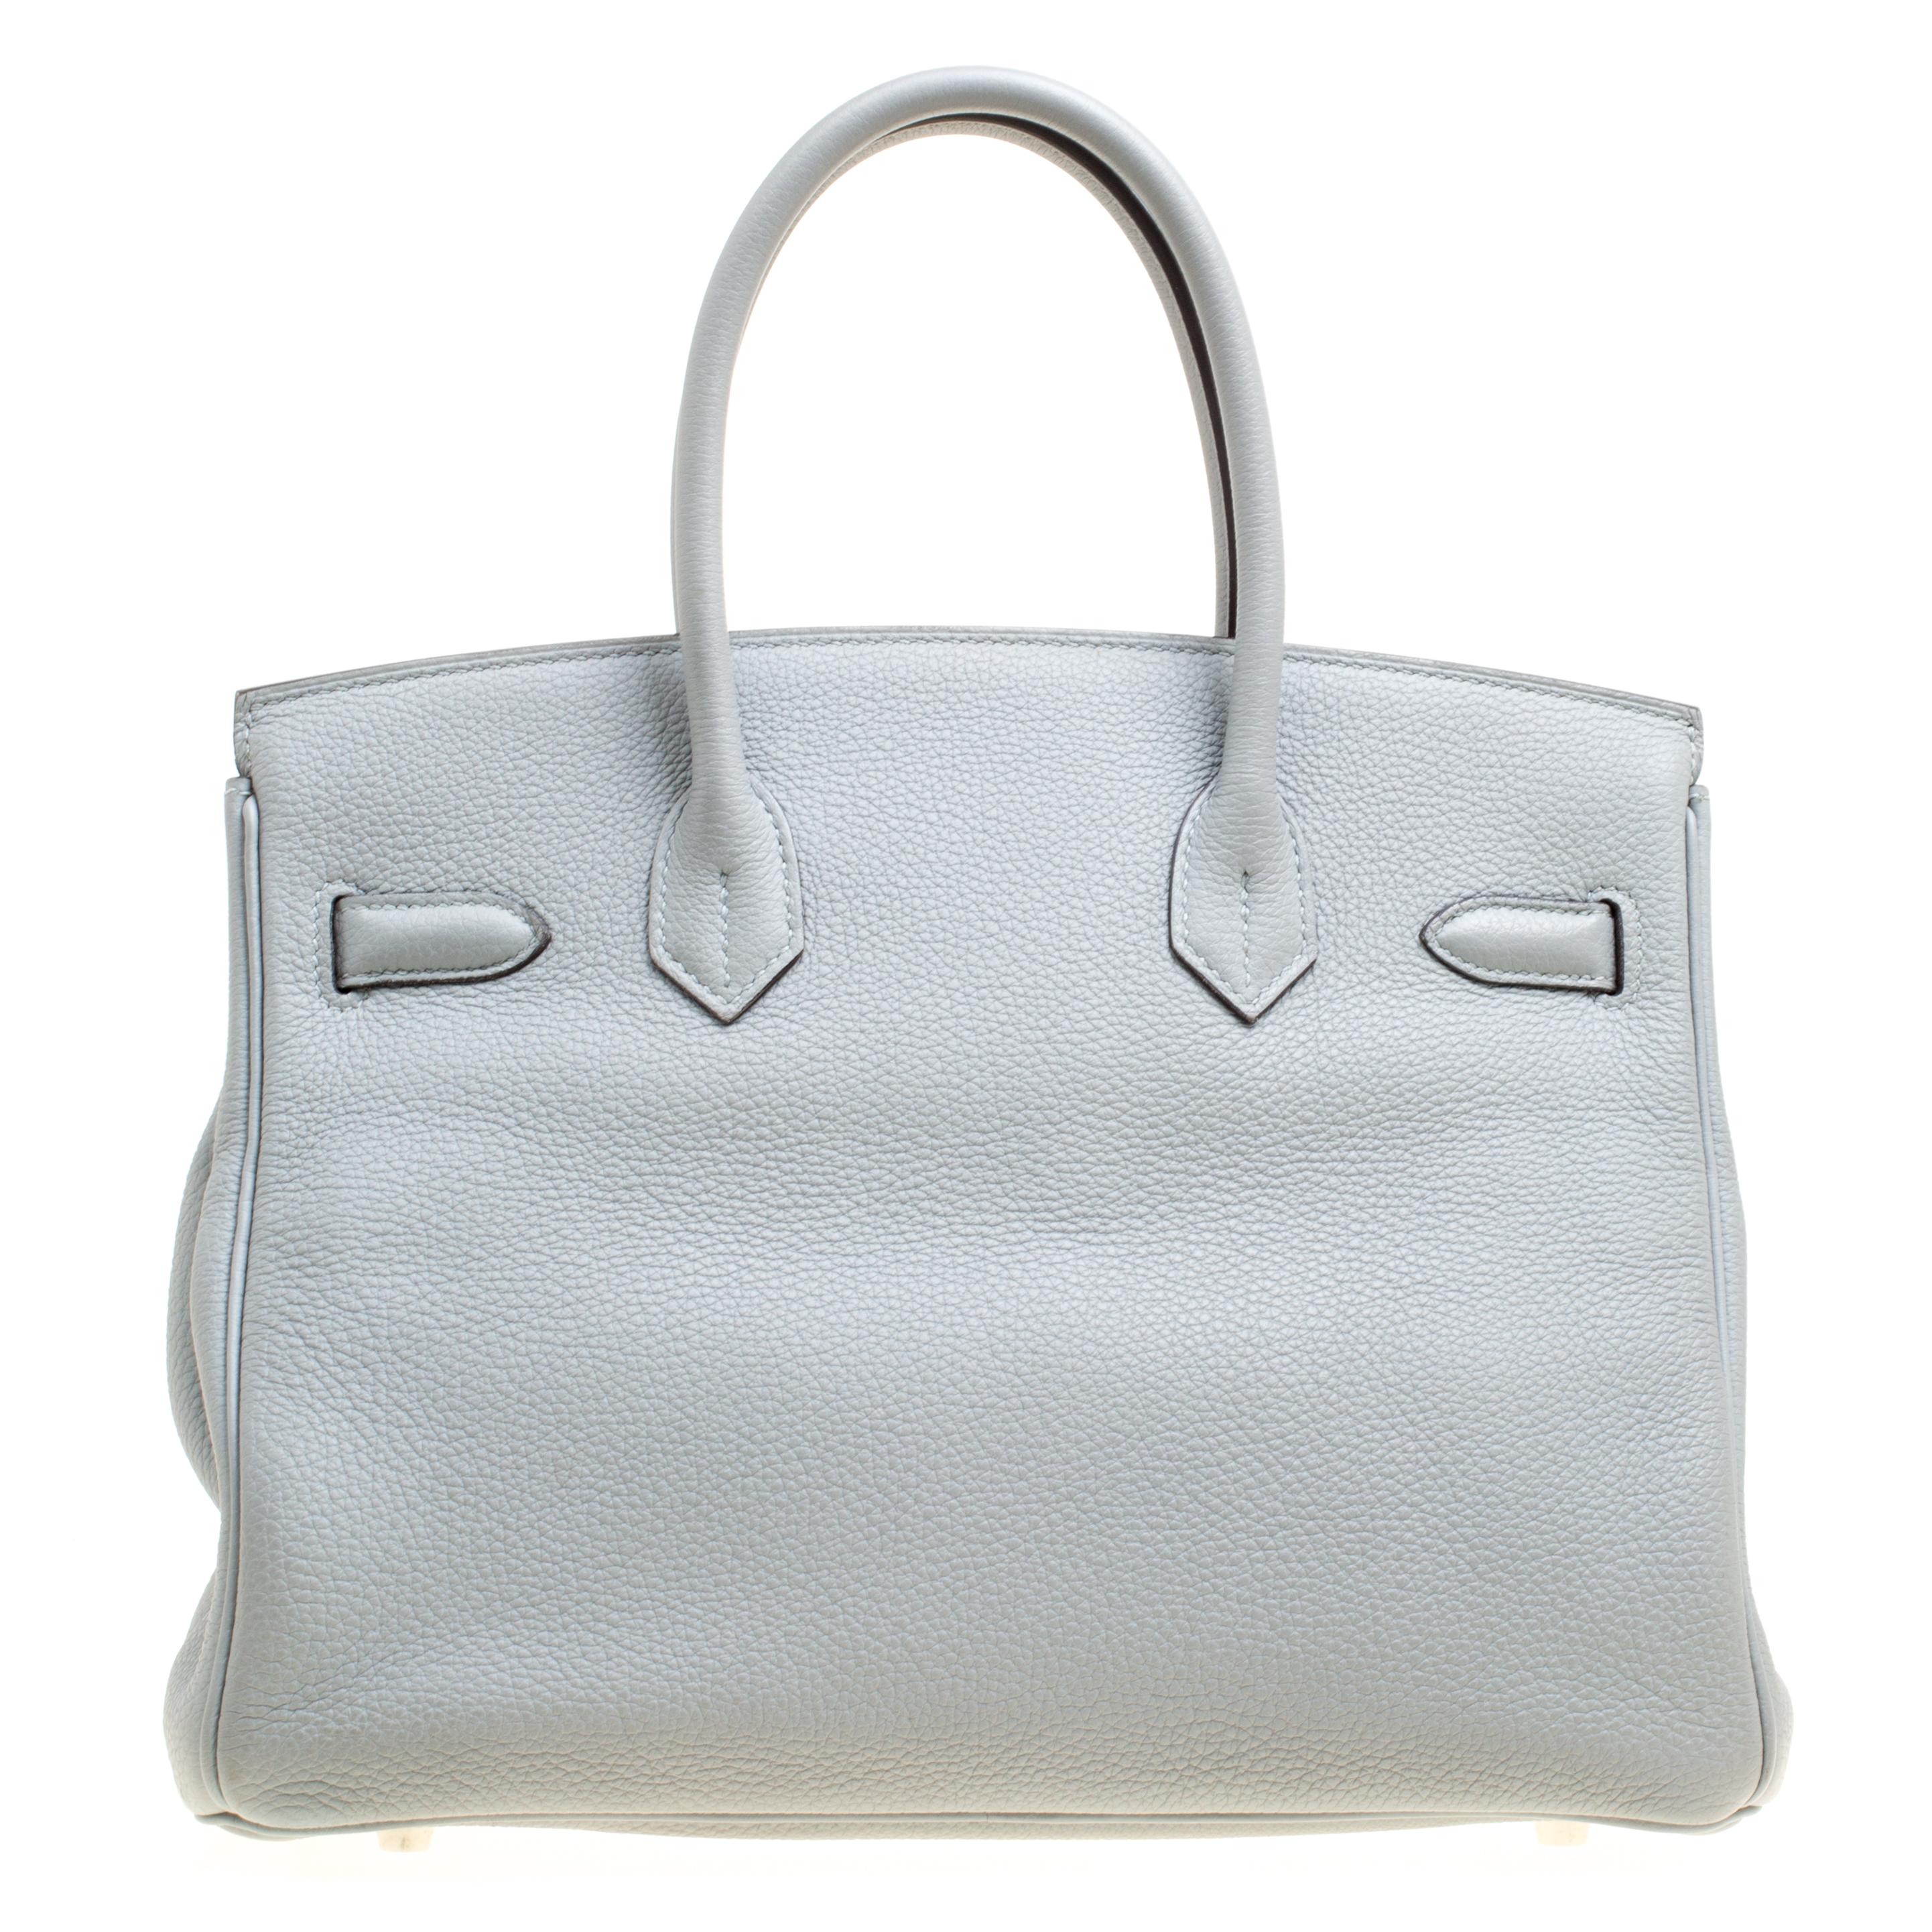 Sac devenu un symbole de luxe et de classe:: le Birkin d'Hermès est l'un des sacs les plus convoités au monde. Fabriqué sur mesure selon les suggestions de Jane Birkin:: d'où son nom:: ce sac est destiné à répondre aux besoins de la vie trépidante